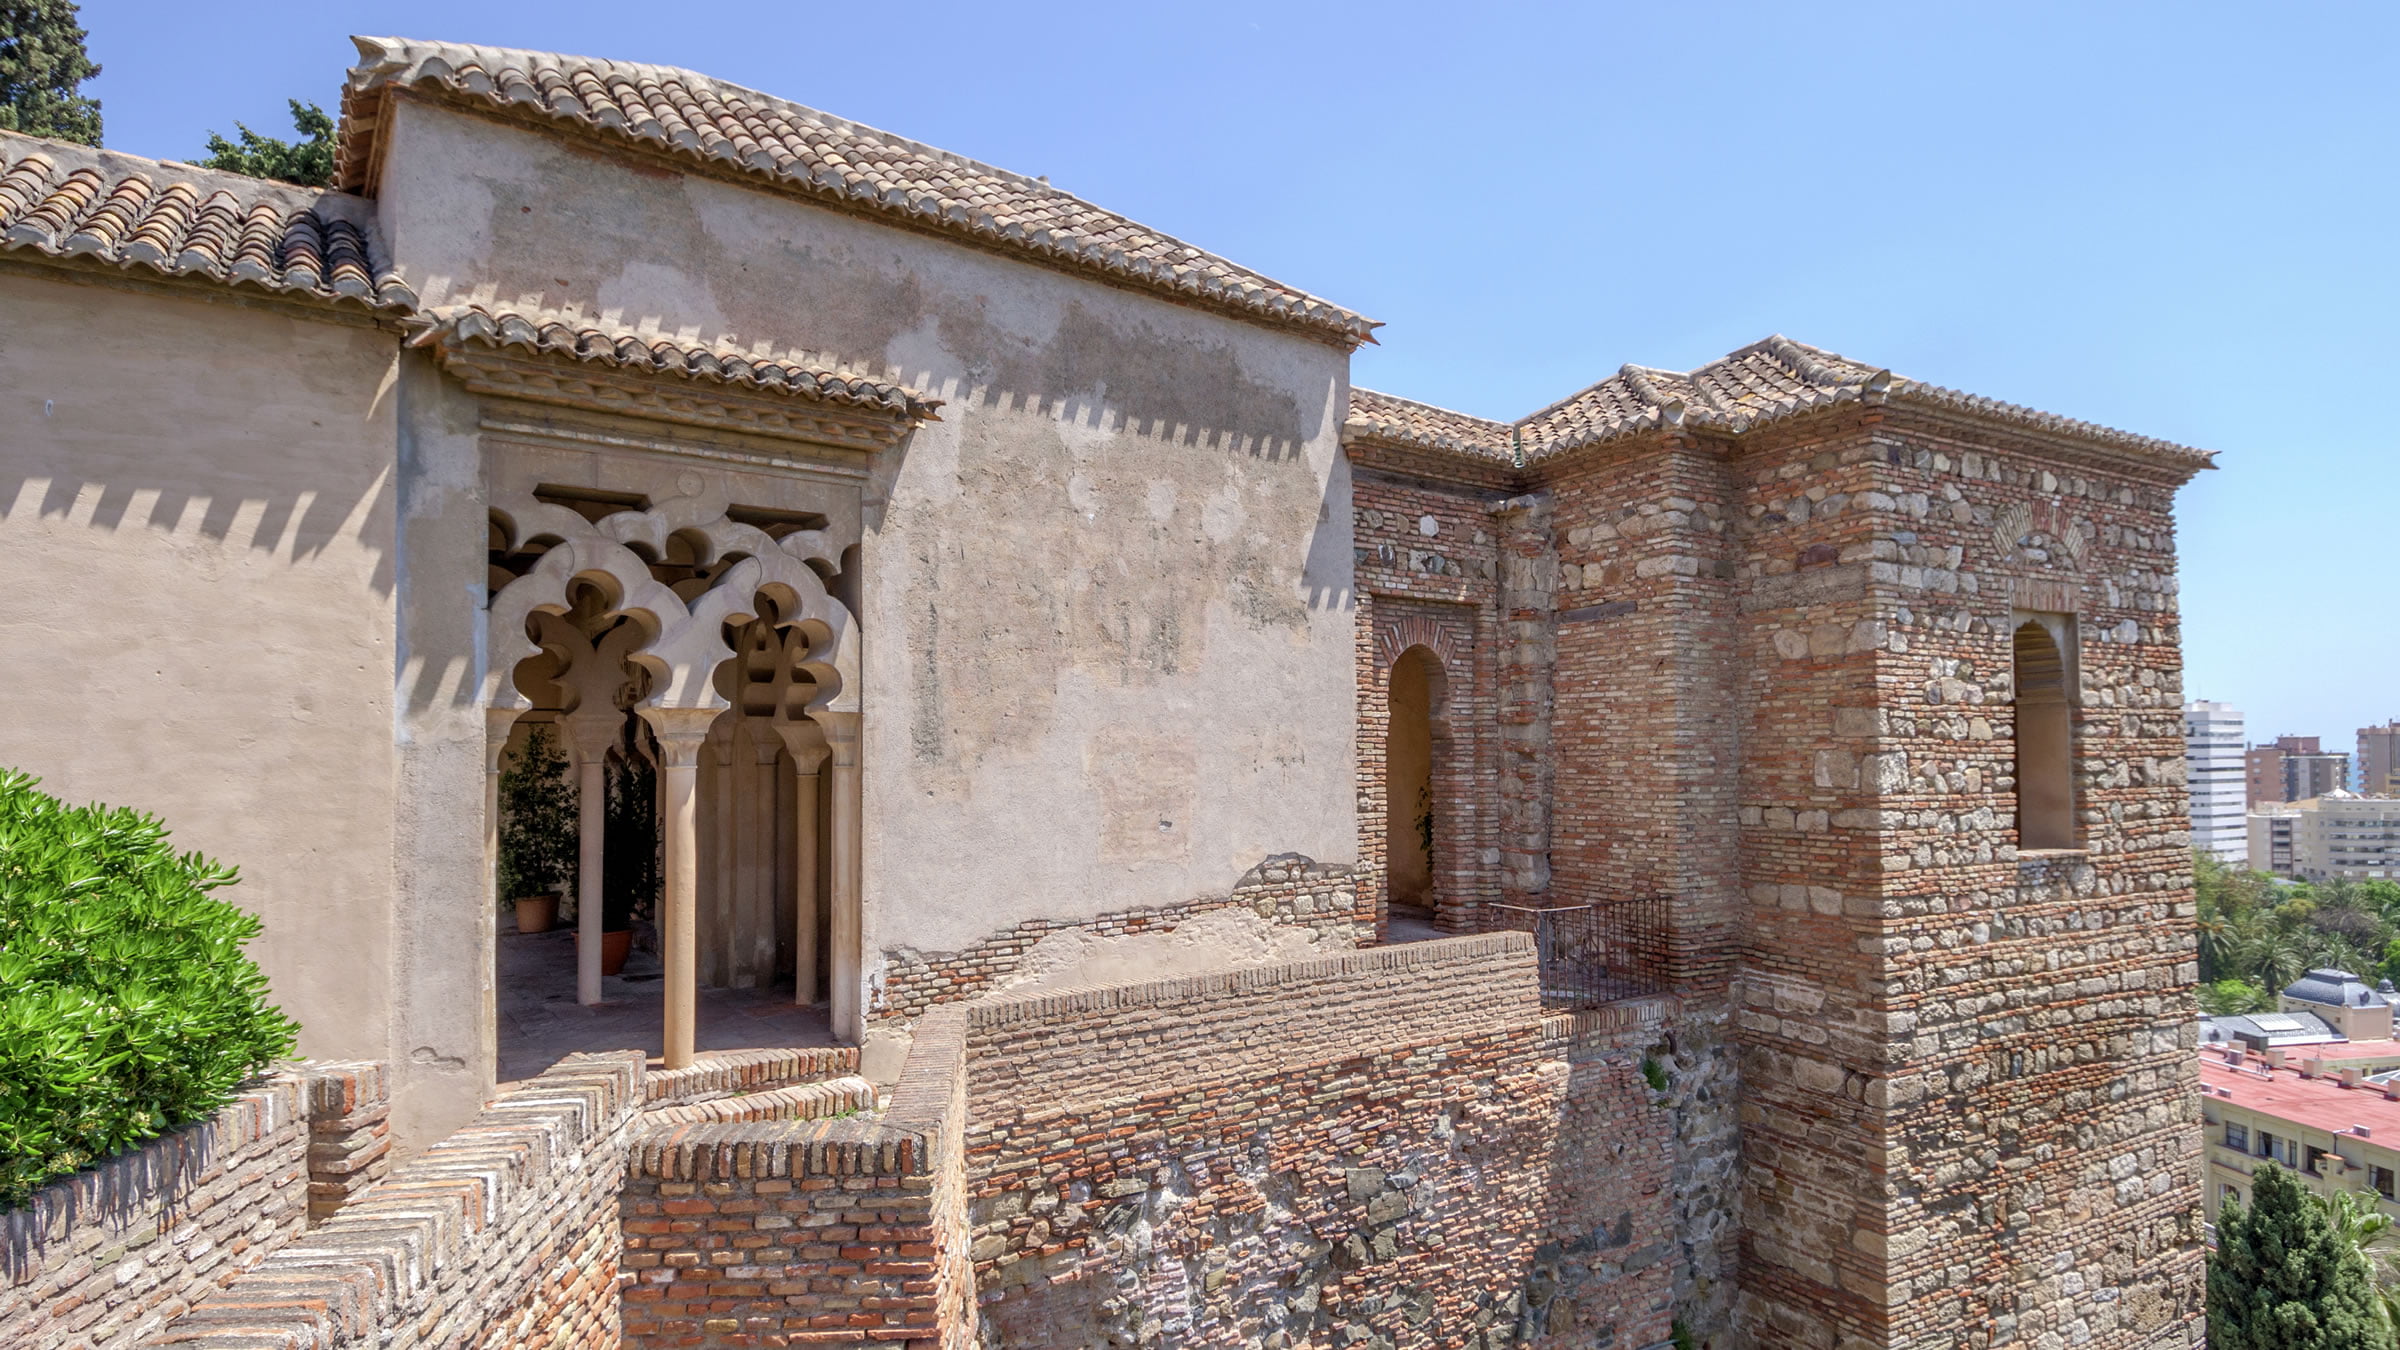 Interior of the Alcazaba, Malaga, Spain